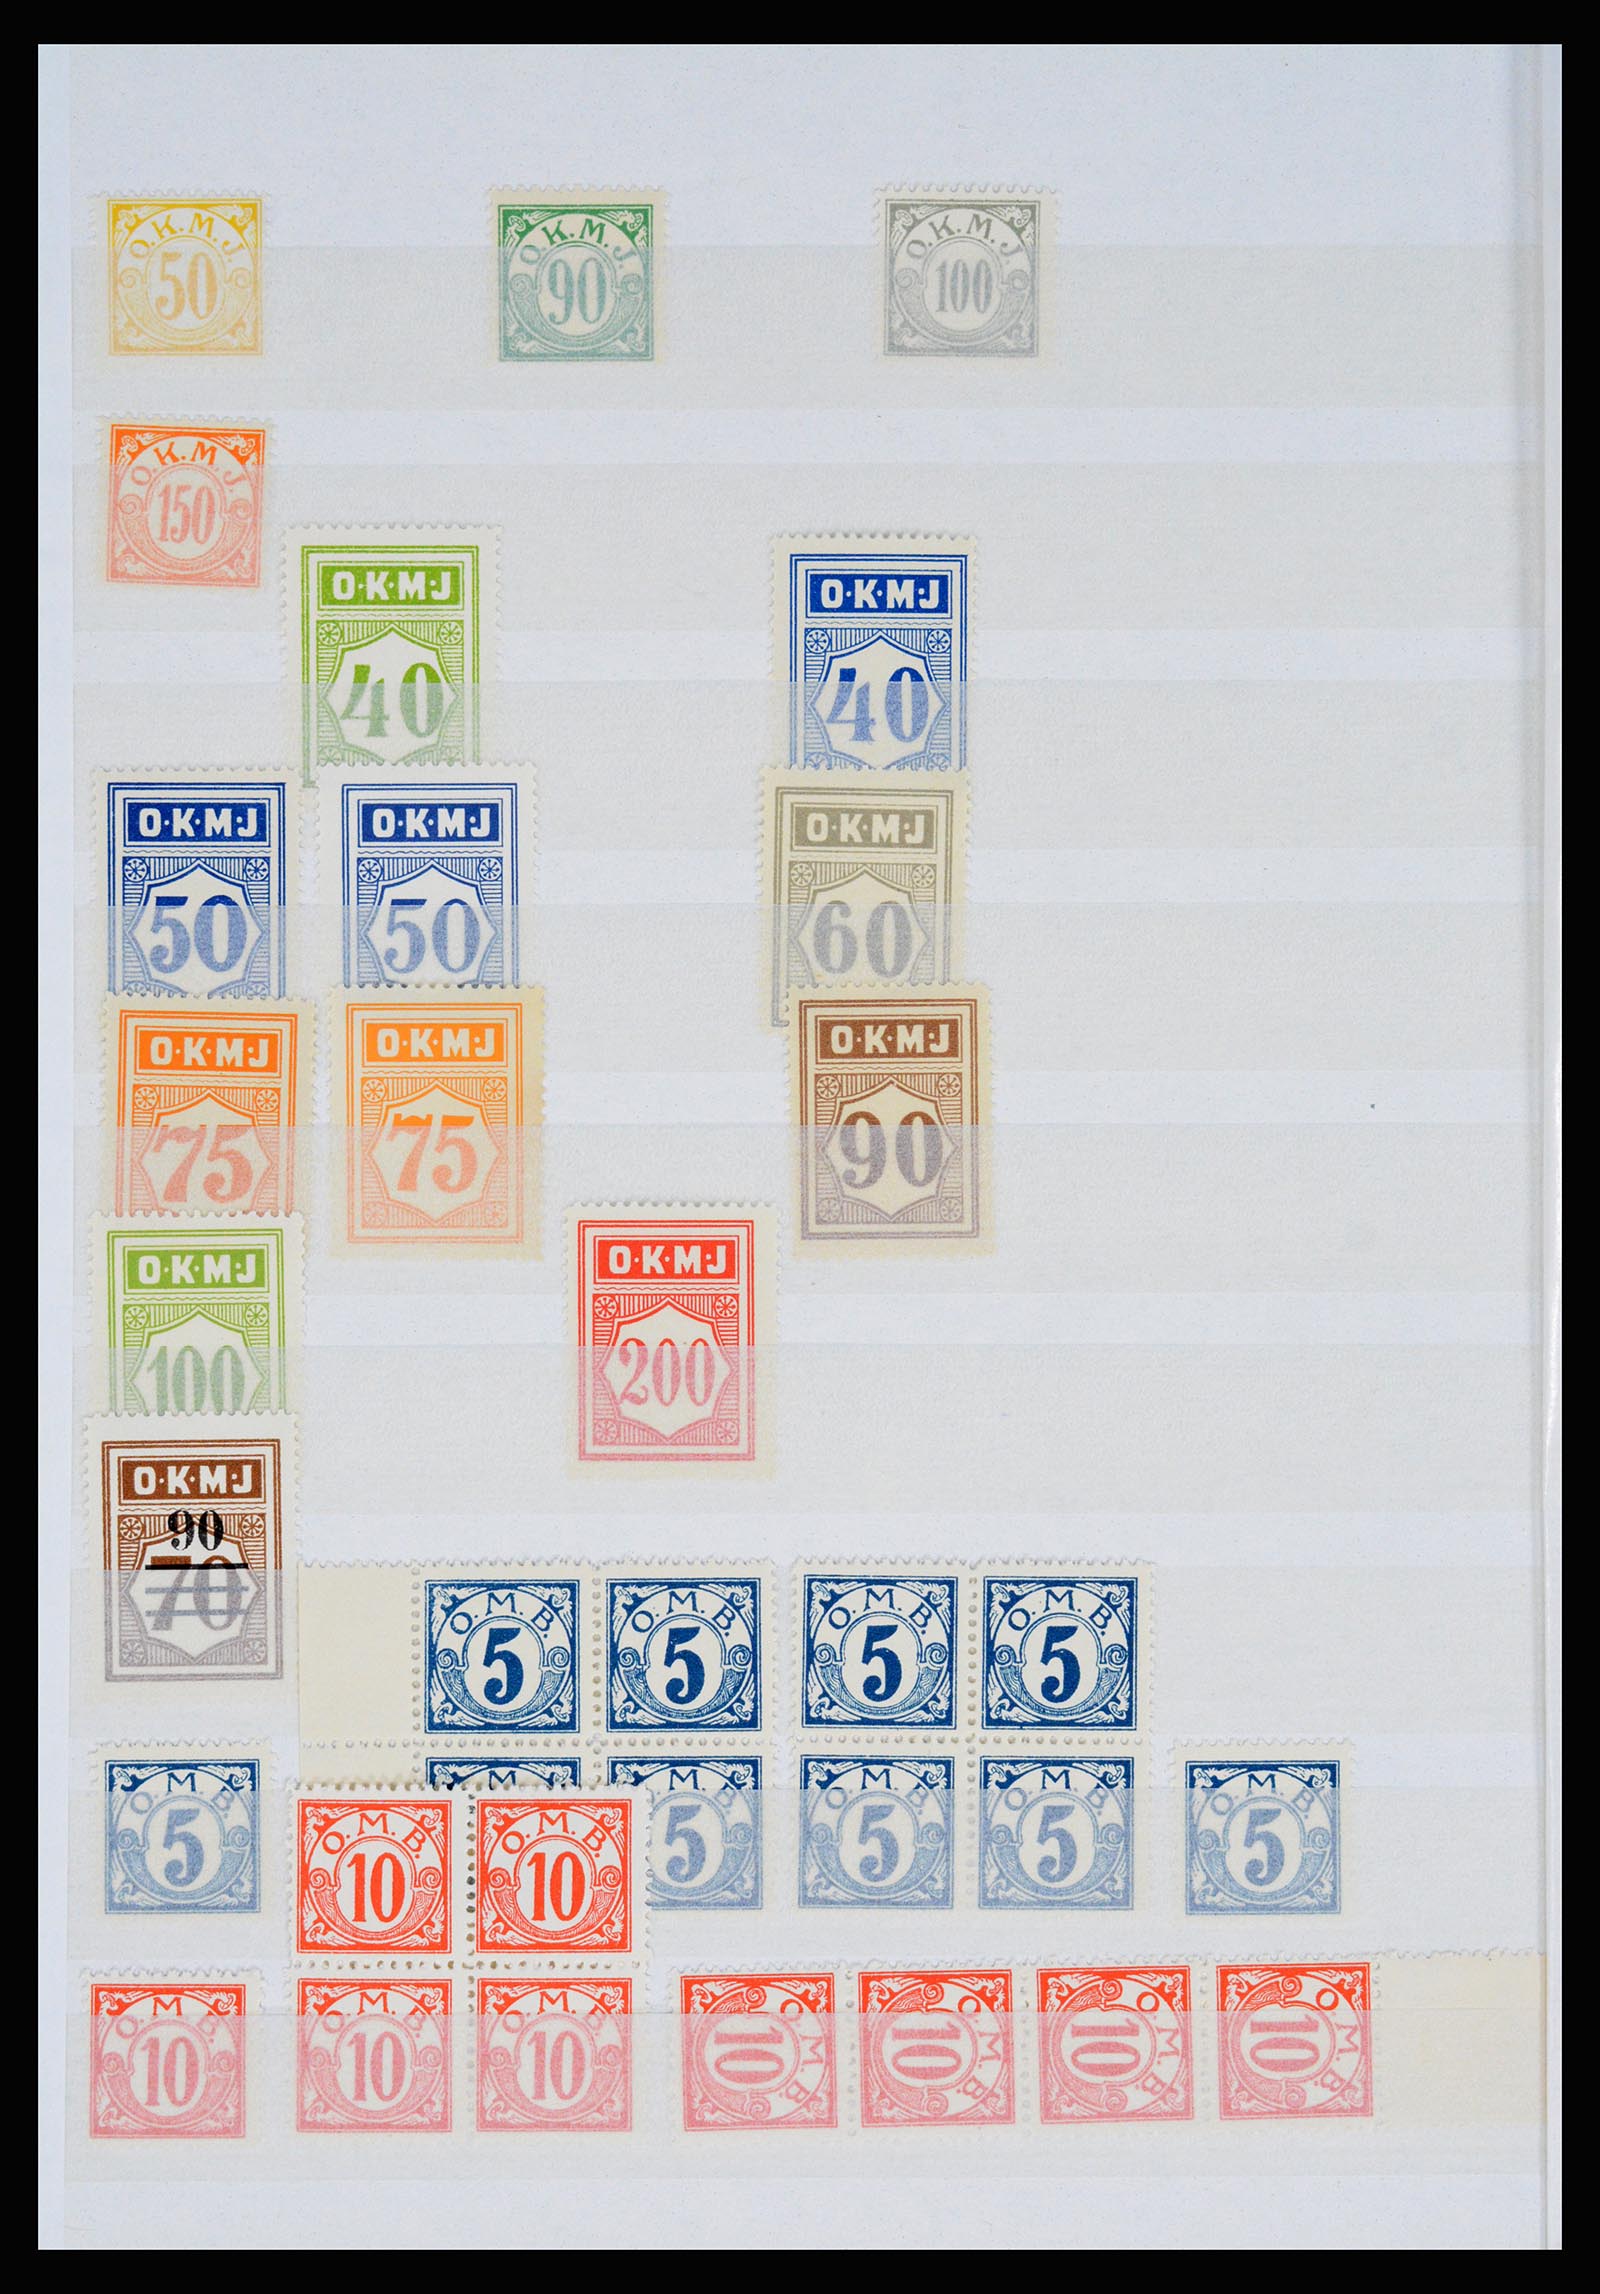 36982 109 - Postzegelverzameling 36982 Denemarken spoorwegzegels.